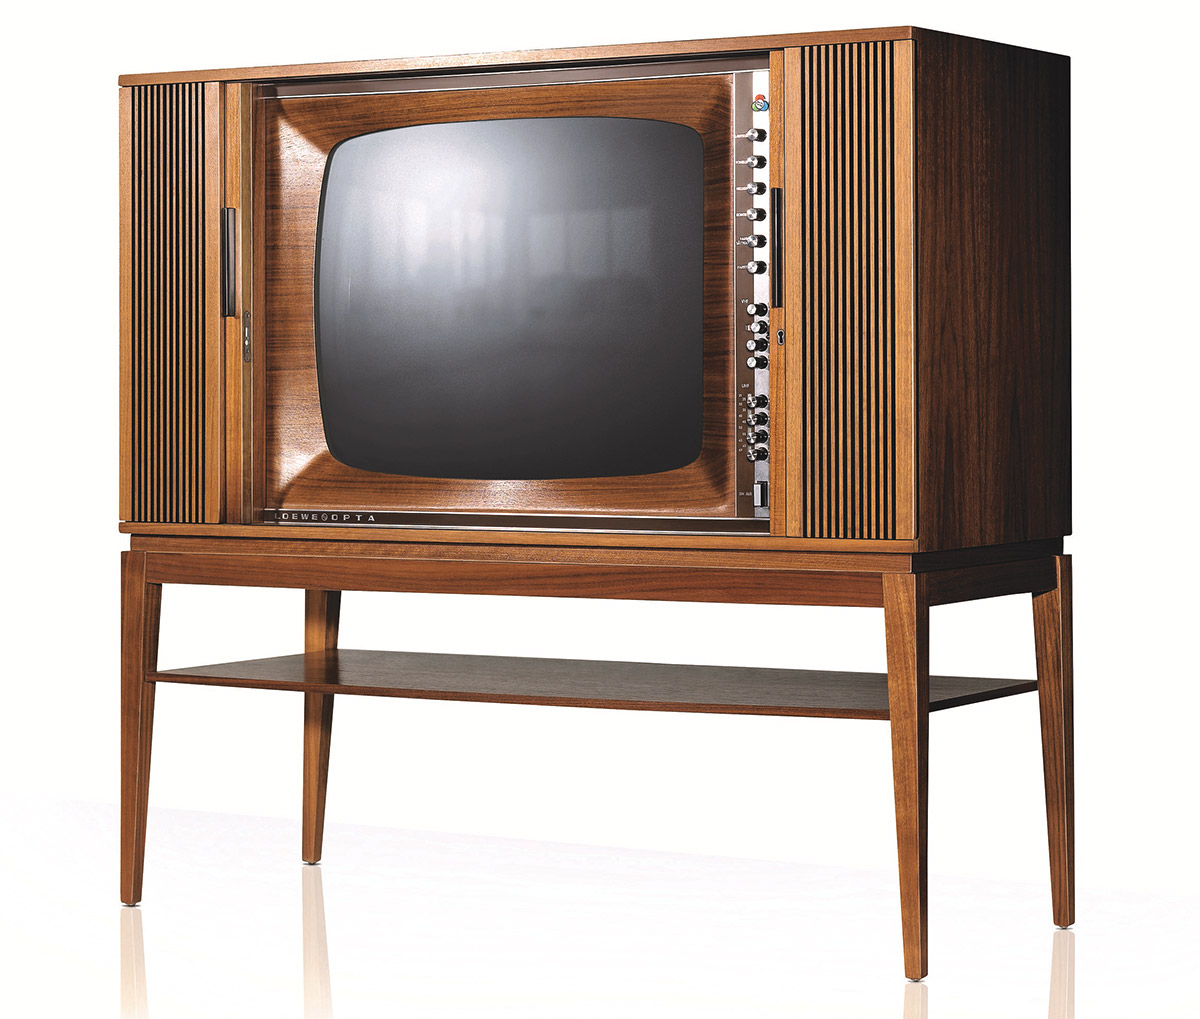 Das TV-Gerät als attraktiv gestaltetes Möbelstück für den Wohnbereich hat bei Loewe eine sehr lange Tradition.